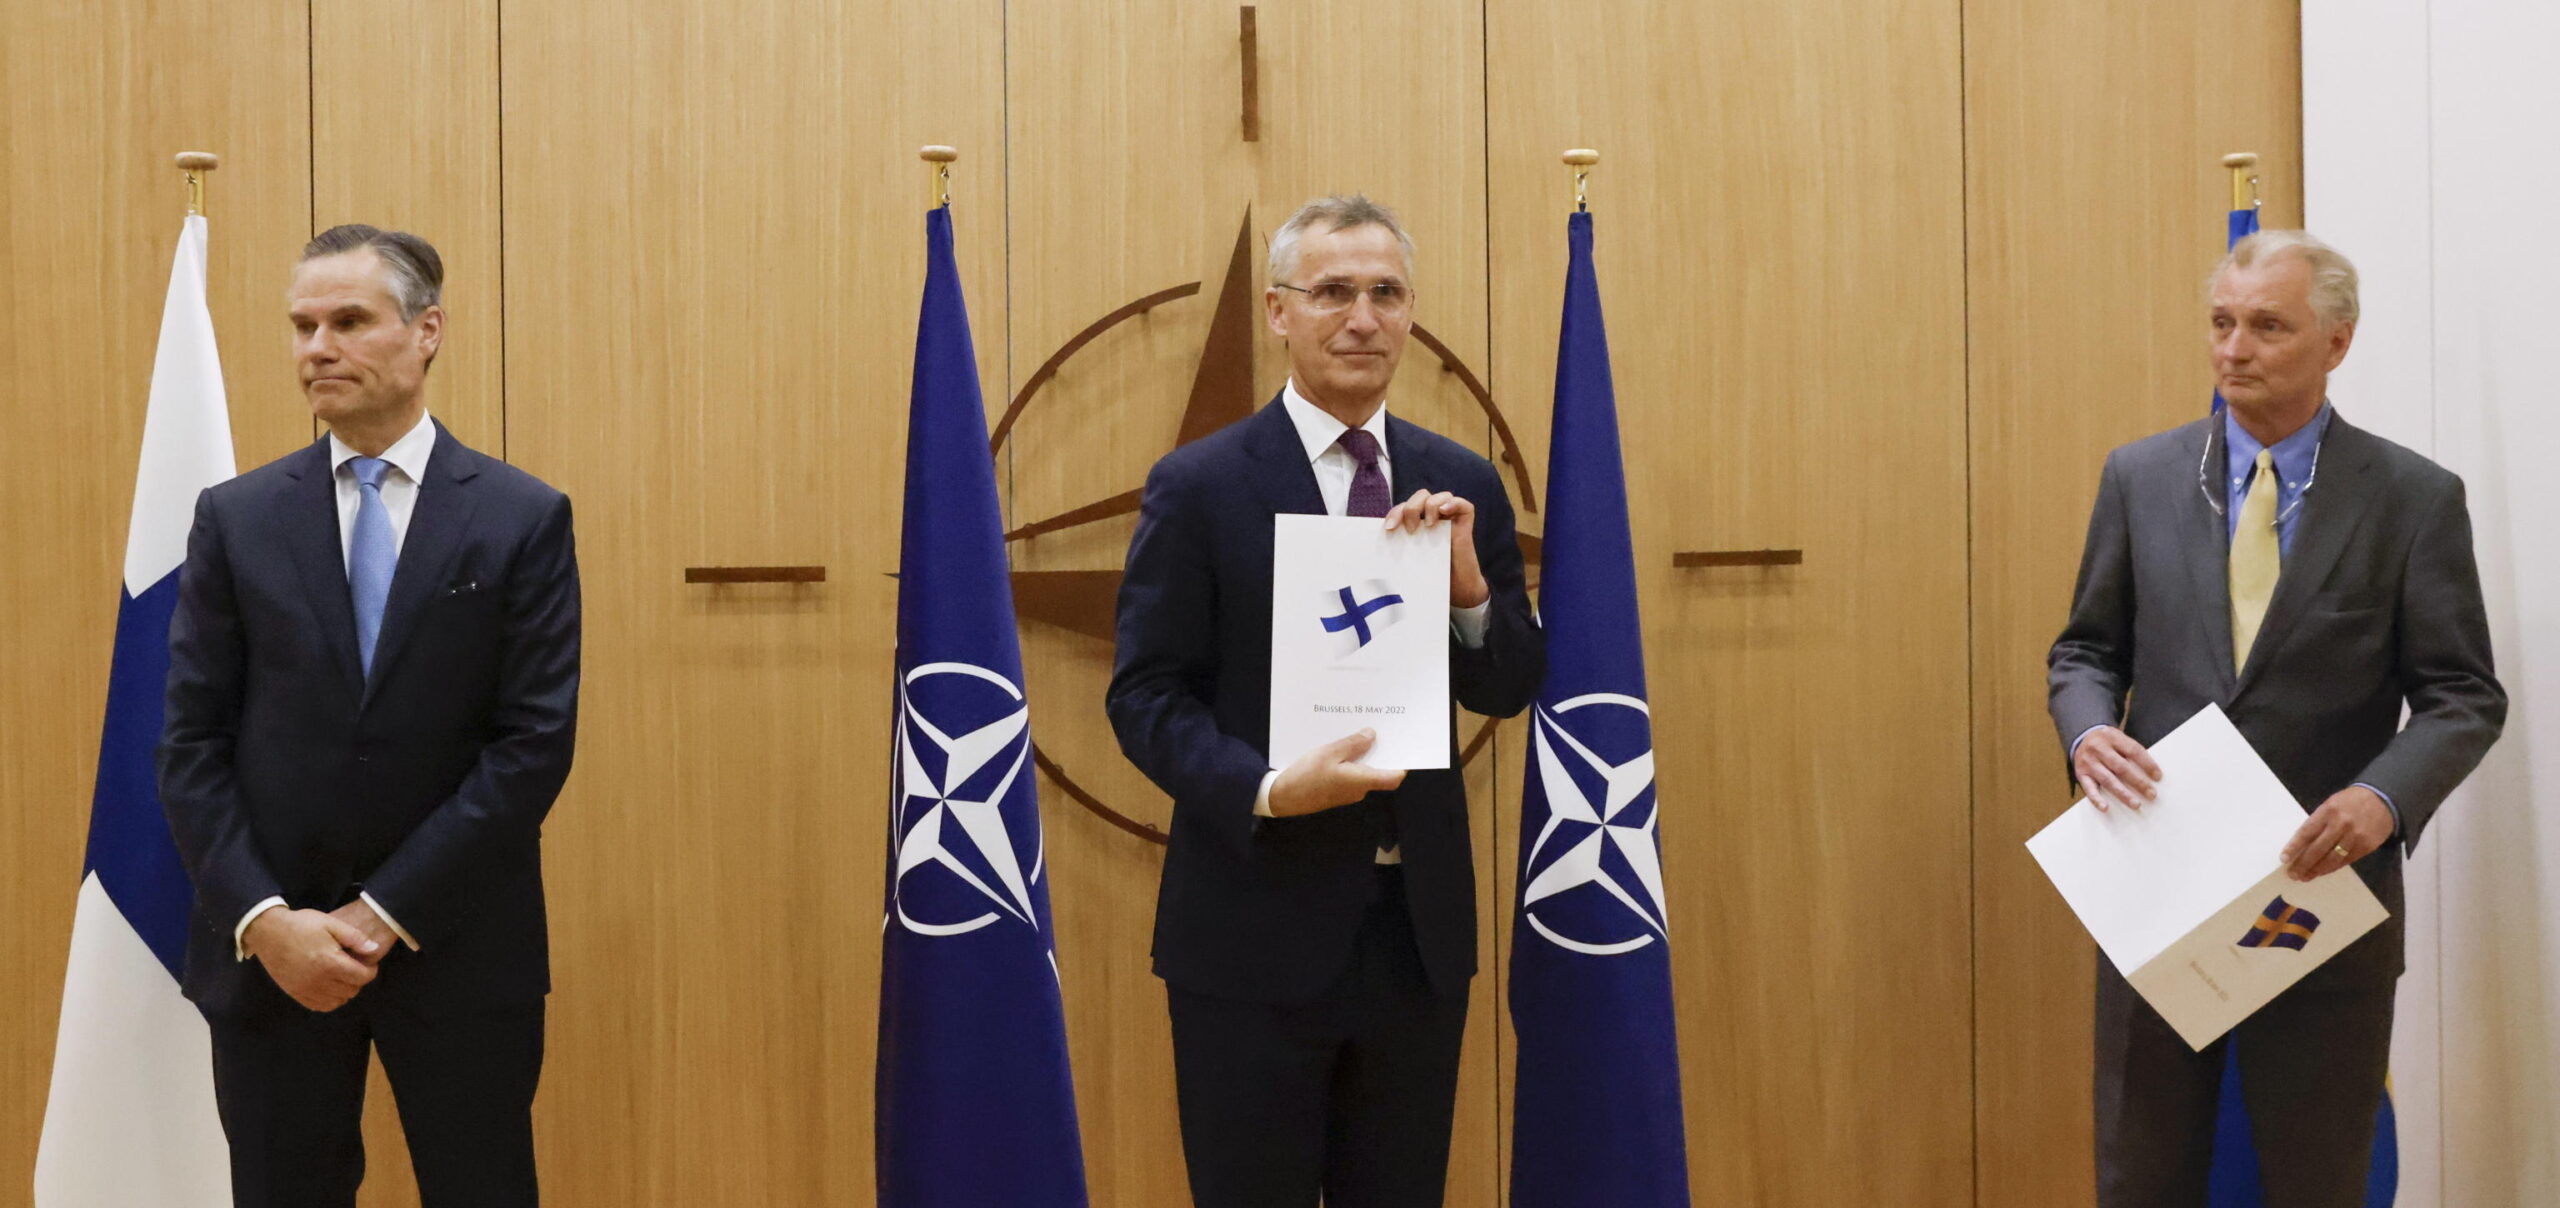 Finlandia e Svezia a Bruxelles, presentata domanda adesione Nato